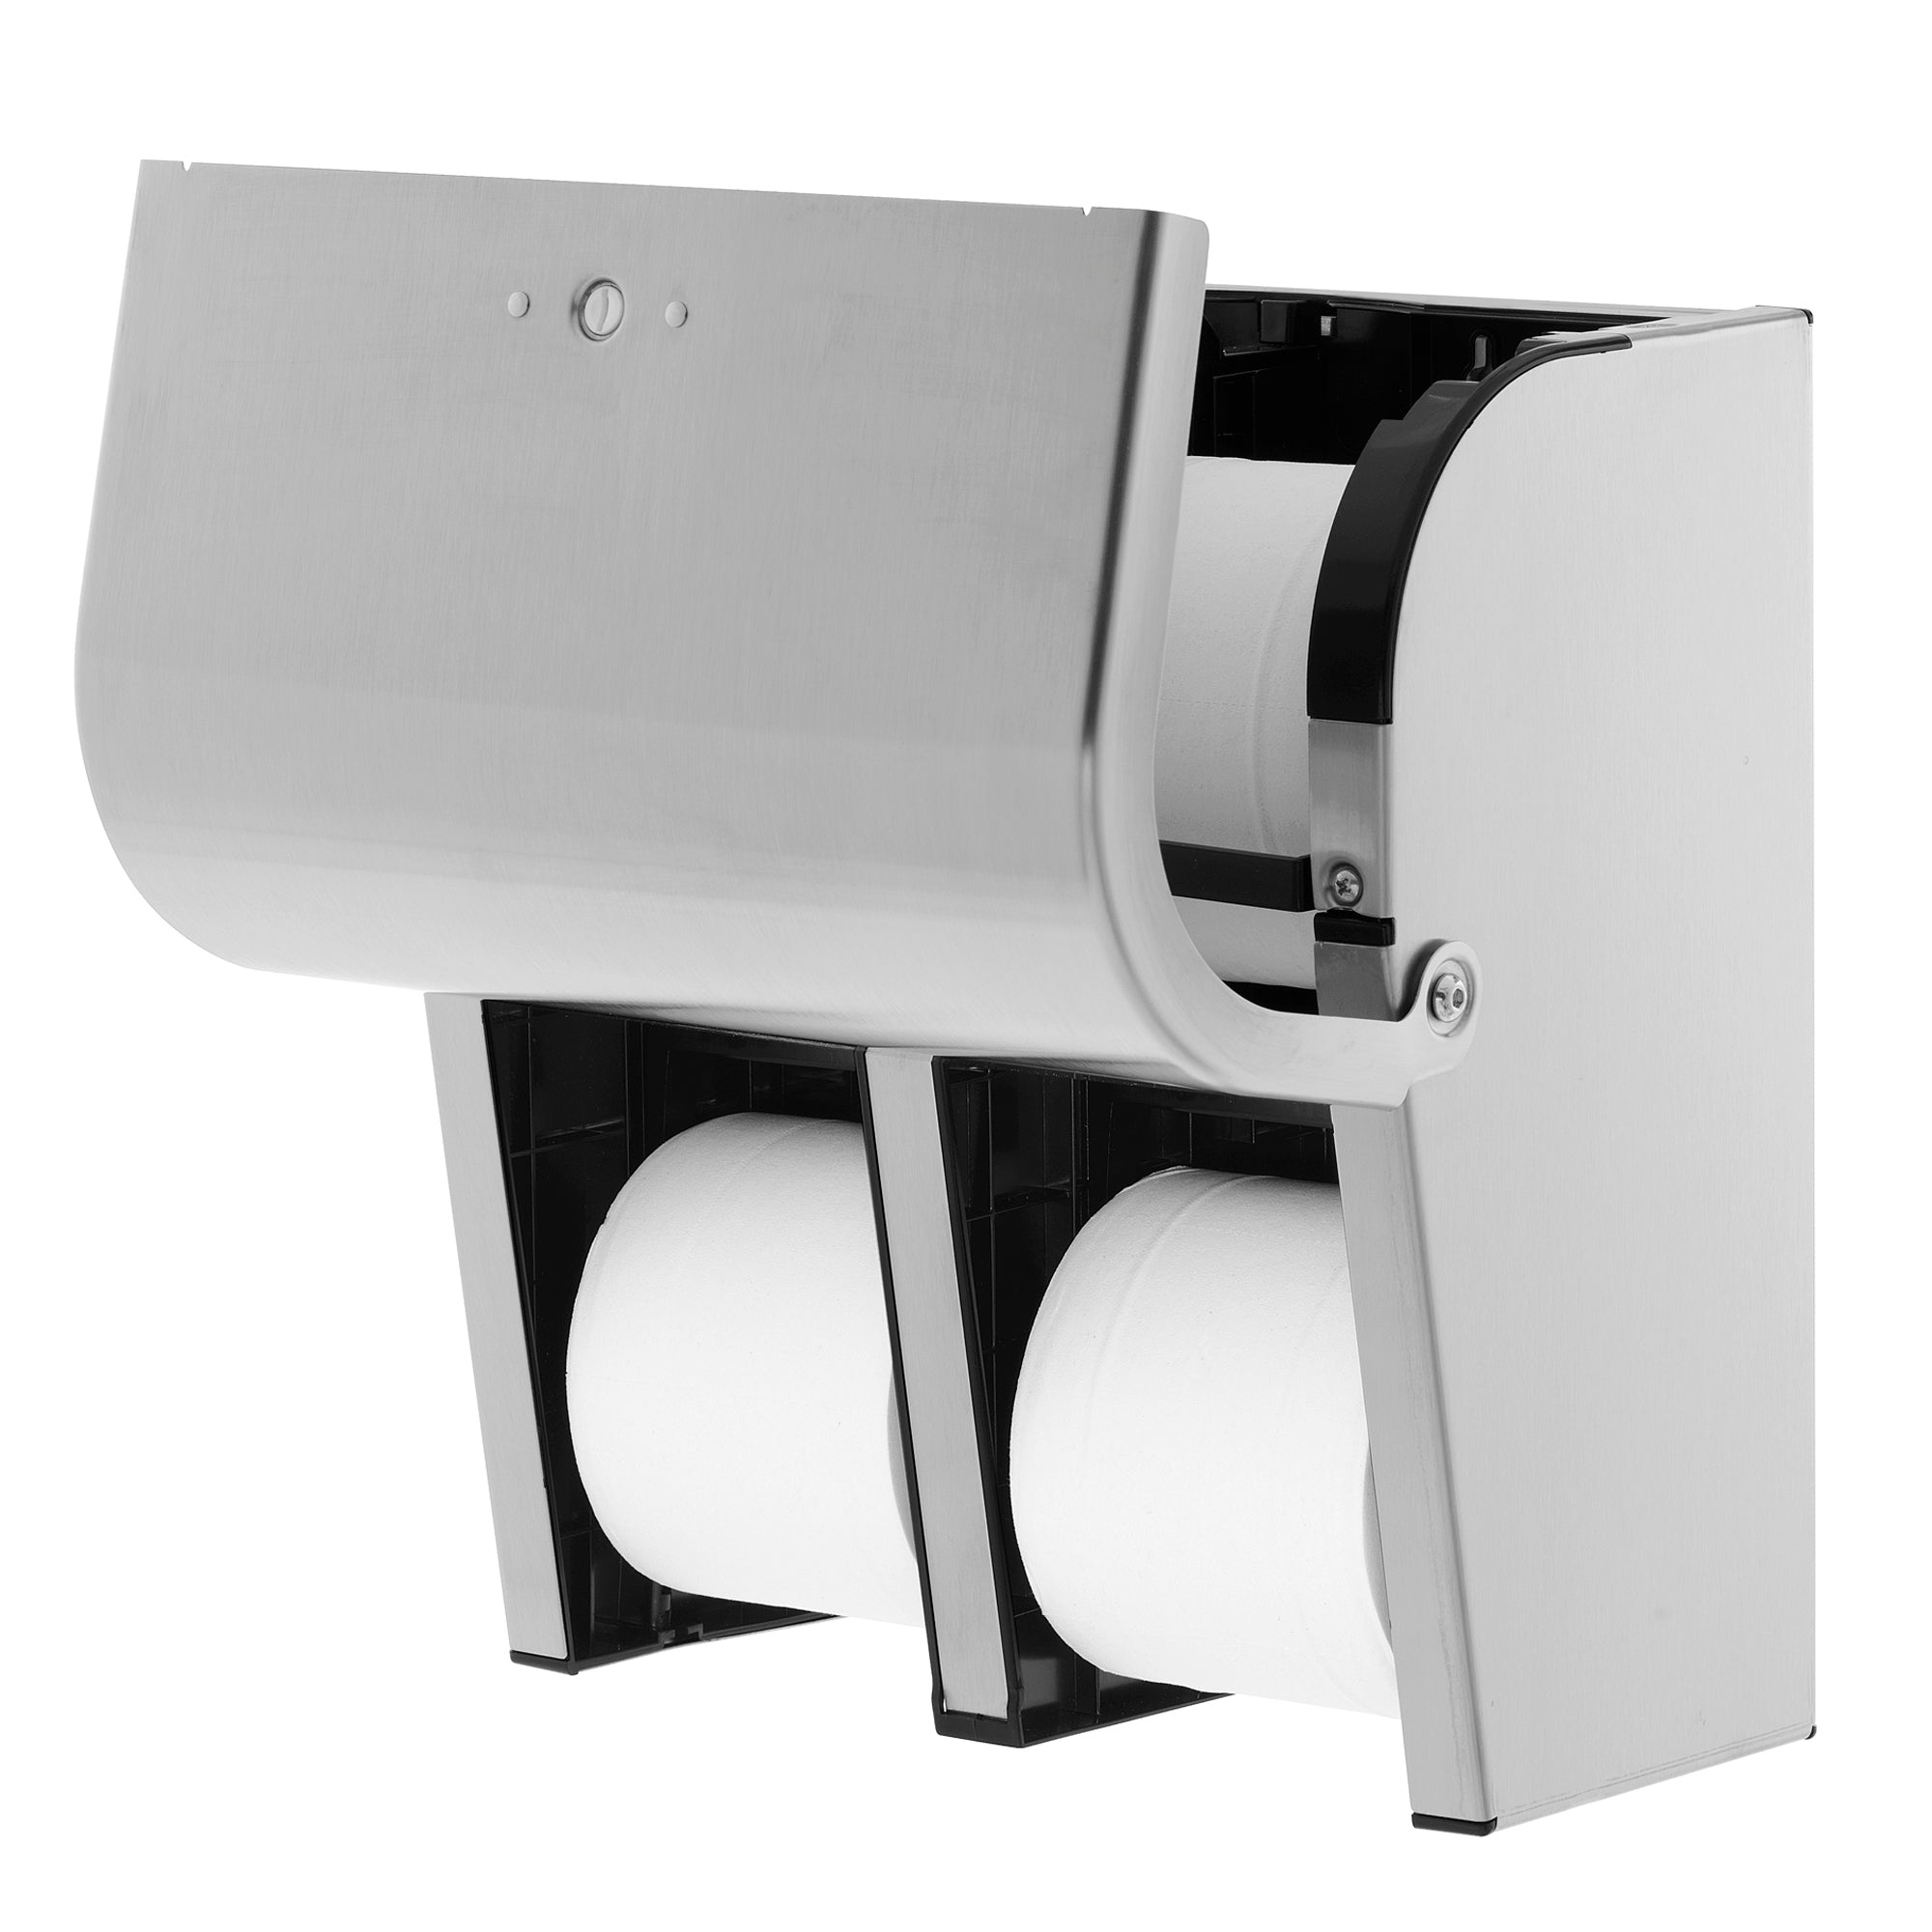 מתקן נייר טואלט בעל קיבולת גבוהה עם 4 גלילים ללא ליבות מסדרת Compact® מבית GP PRO (ג'ורג'יה פסיפיק), נירוסטה, מתקן אחד